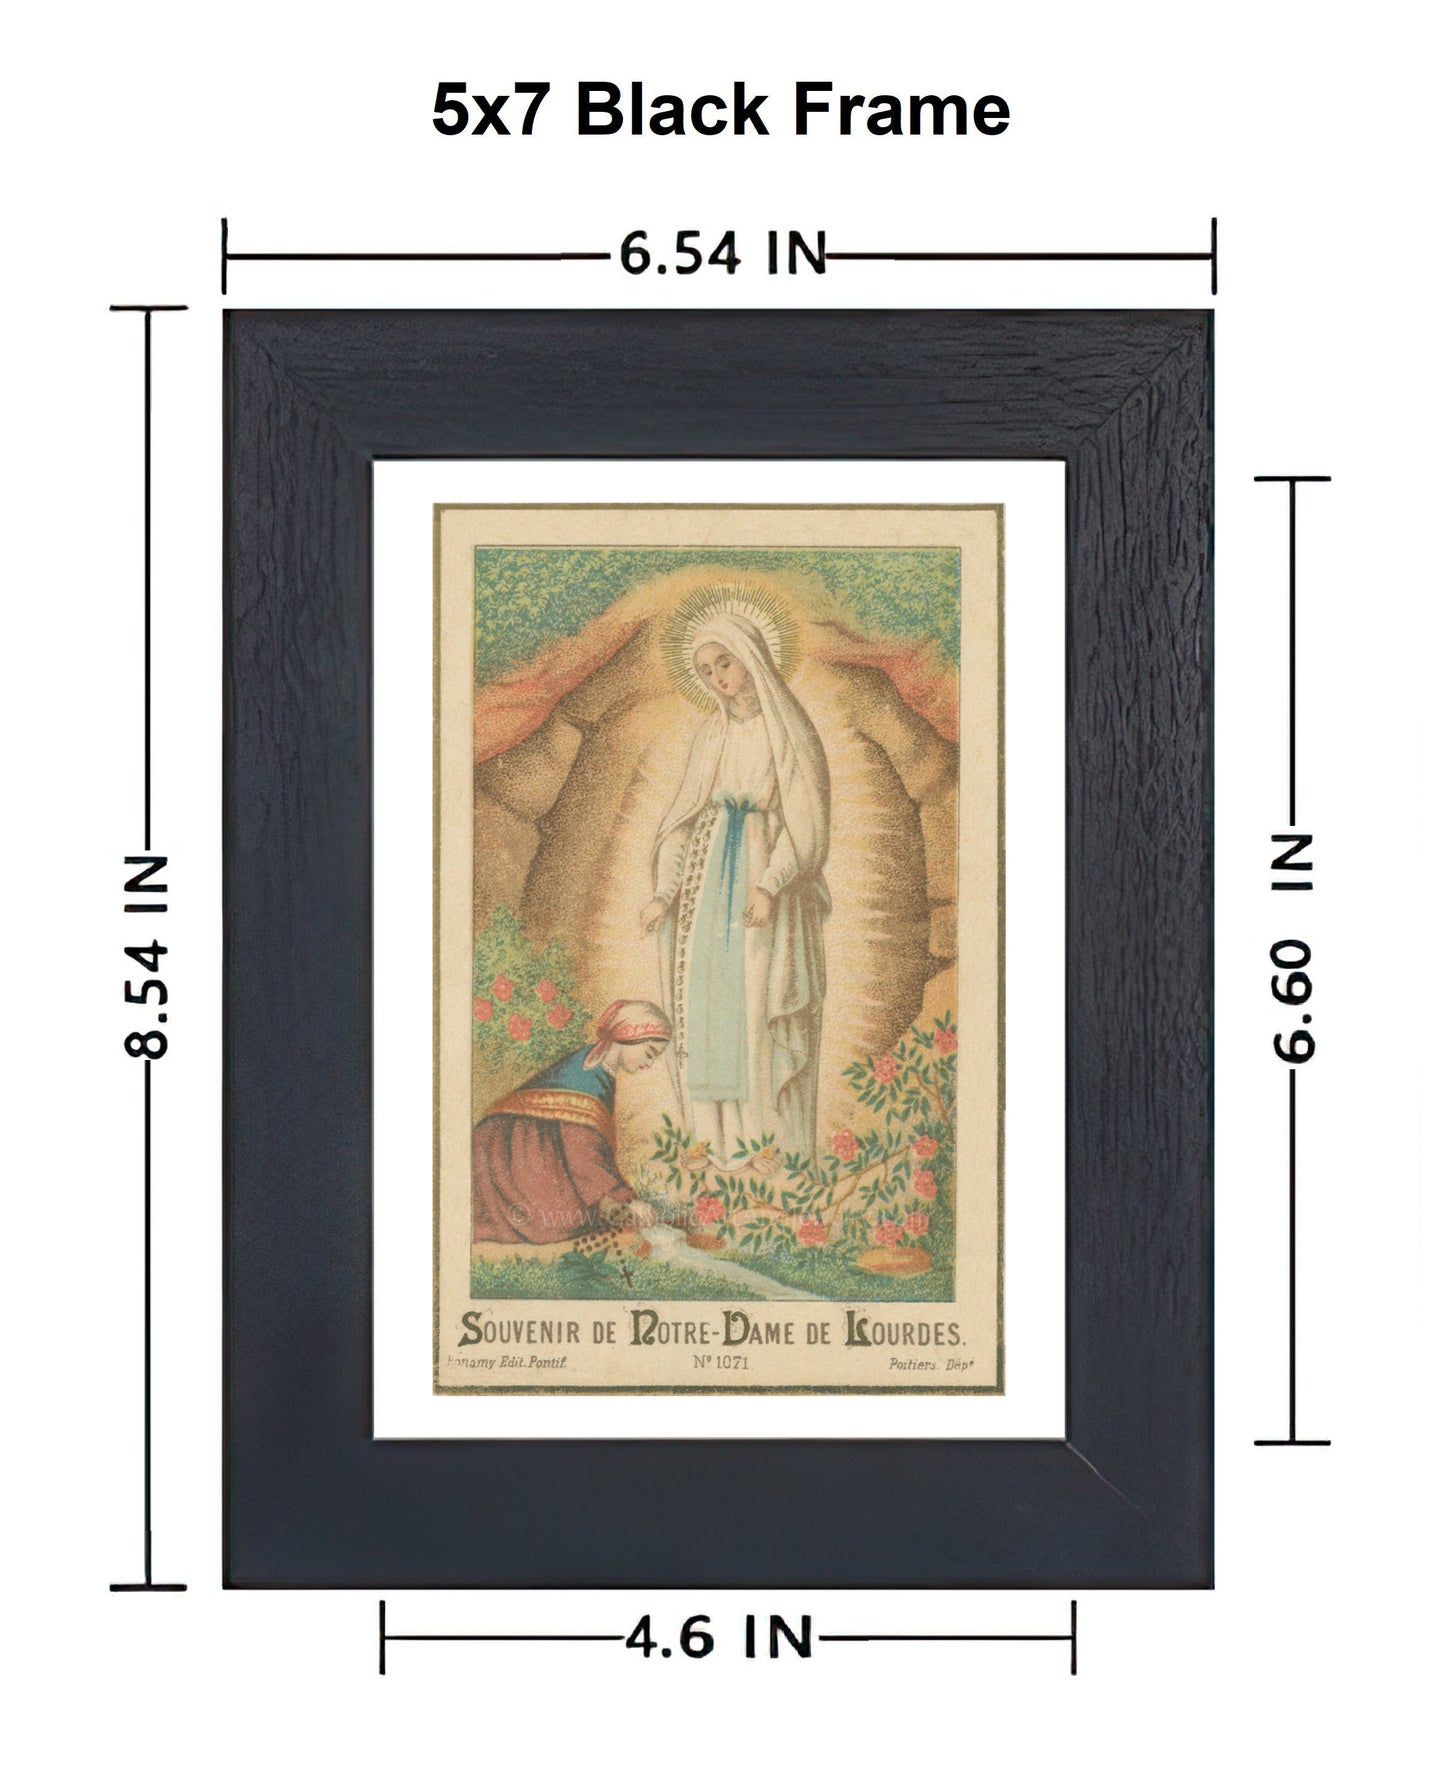 Our Lady of Lourdes – Based on Vintage Holy Card – 3 sizes – Catholic Art